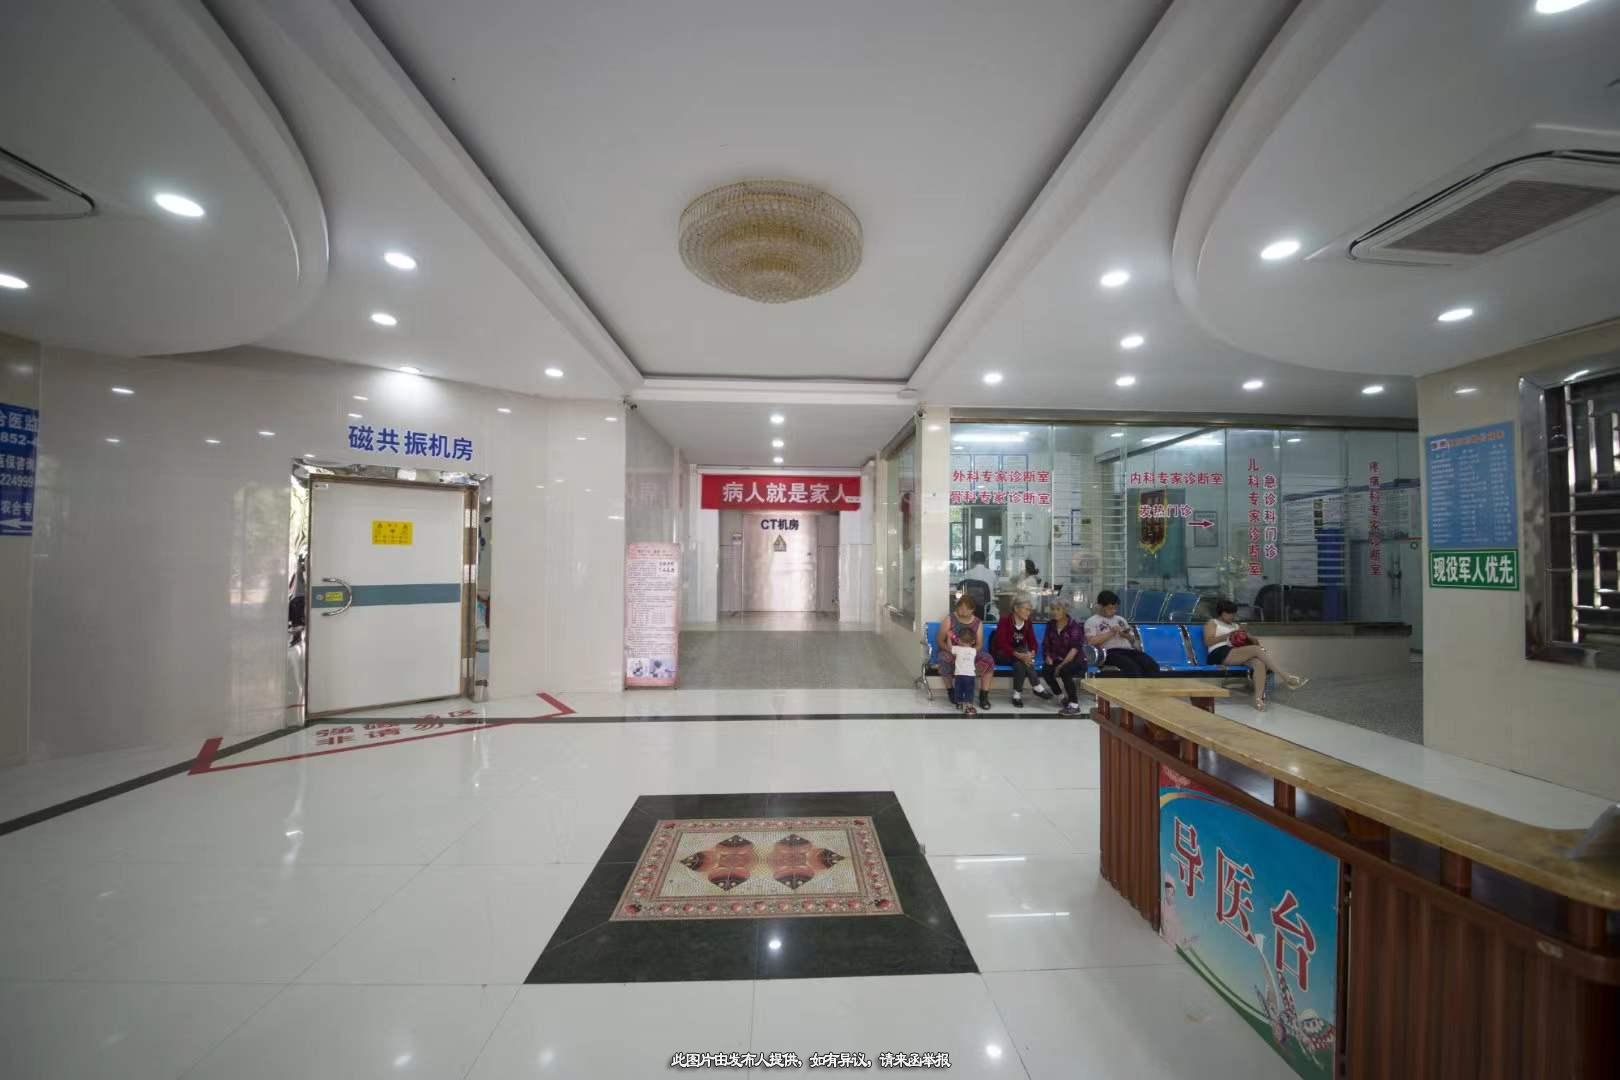 医院转让,经营中的湄潭县内综合医院现寻找合伙人共同经营或整体转让